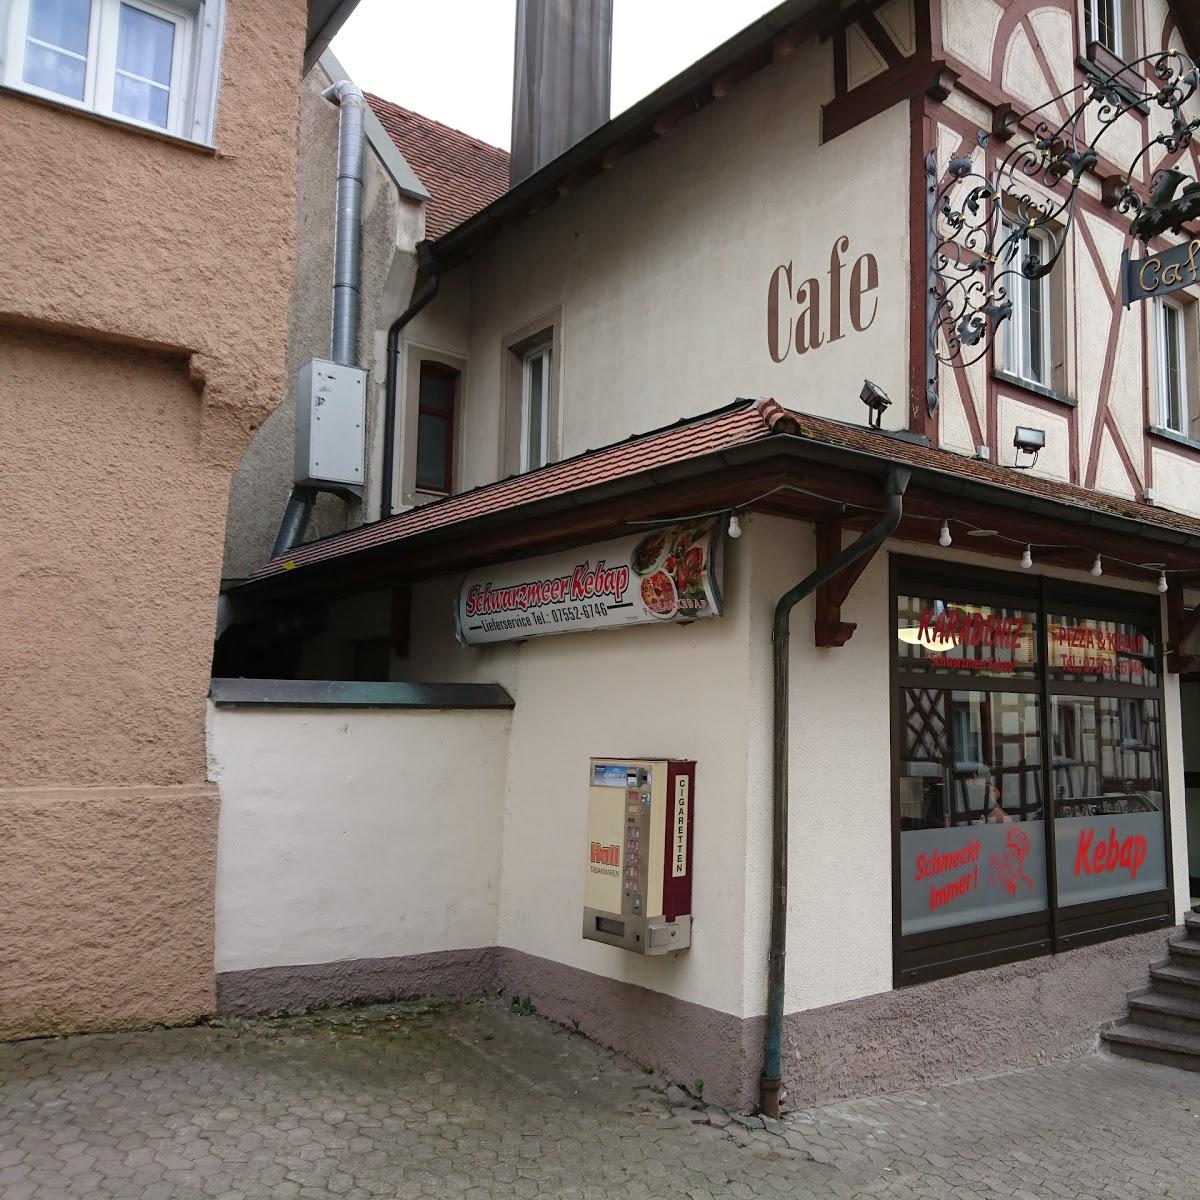 Restaurant "Schwarzmeer Kebap" in Pfullendorf